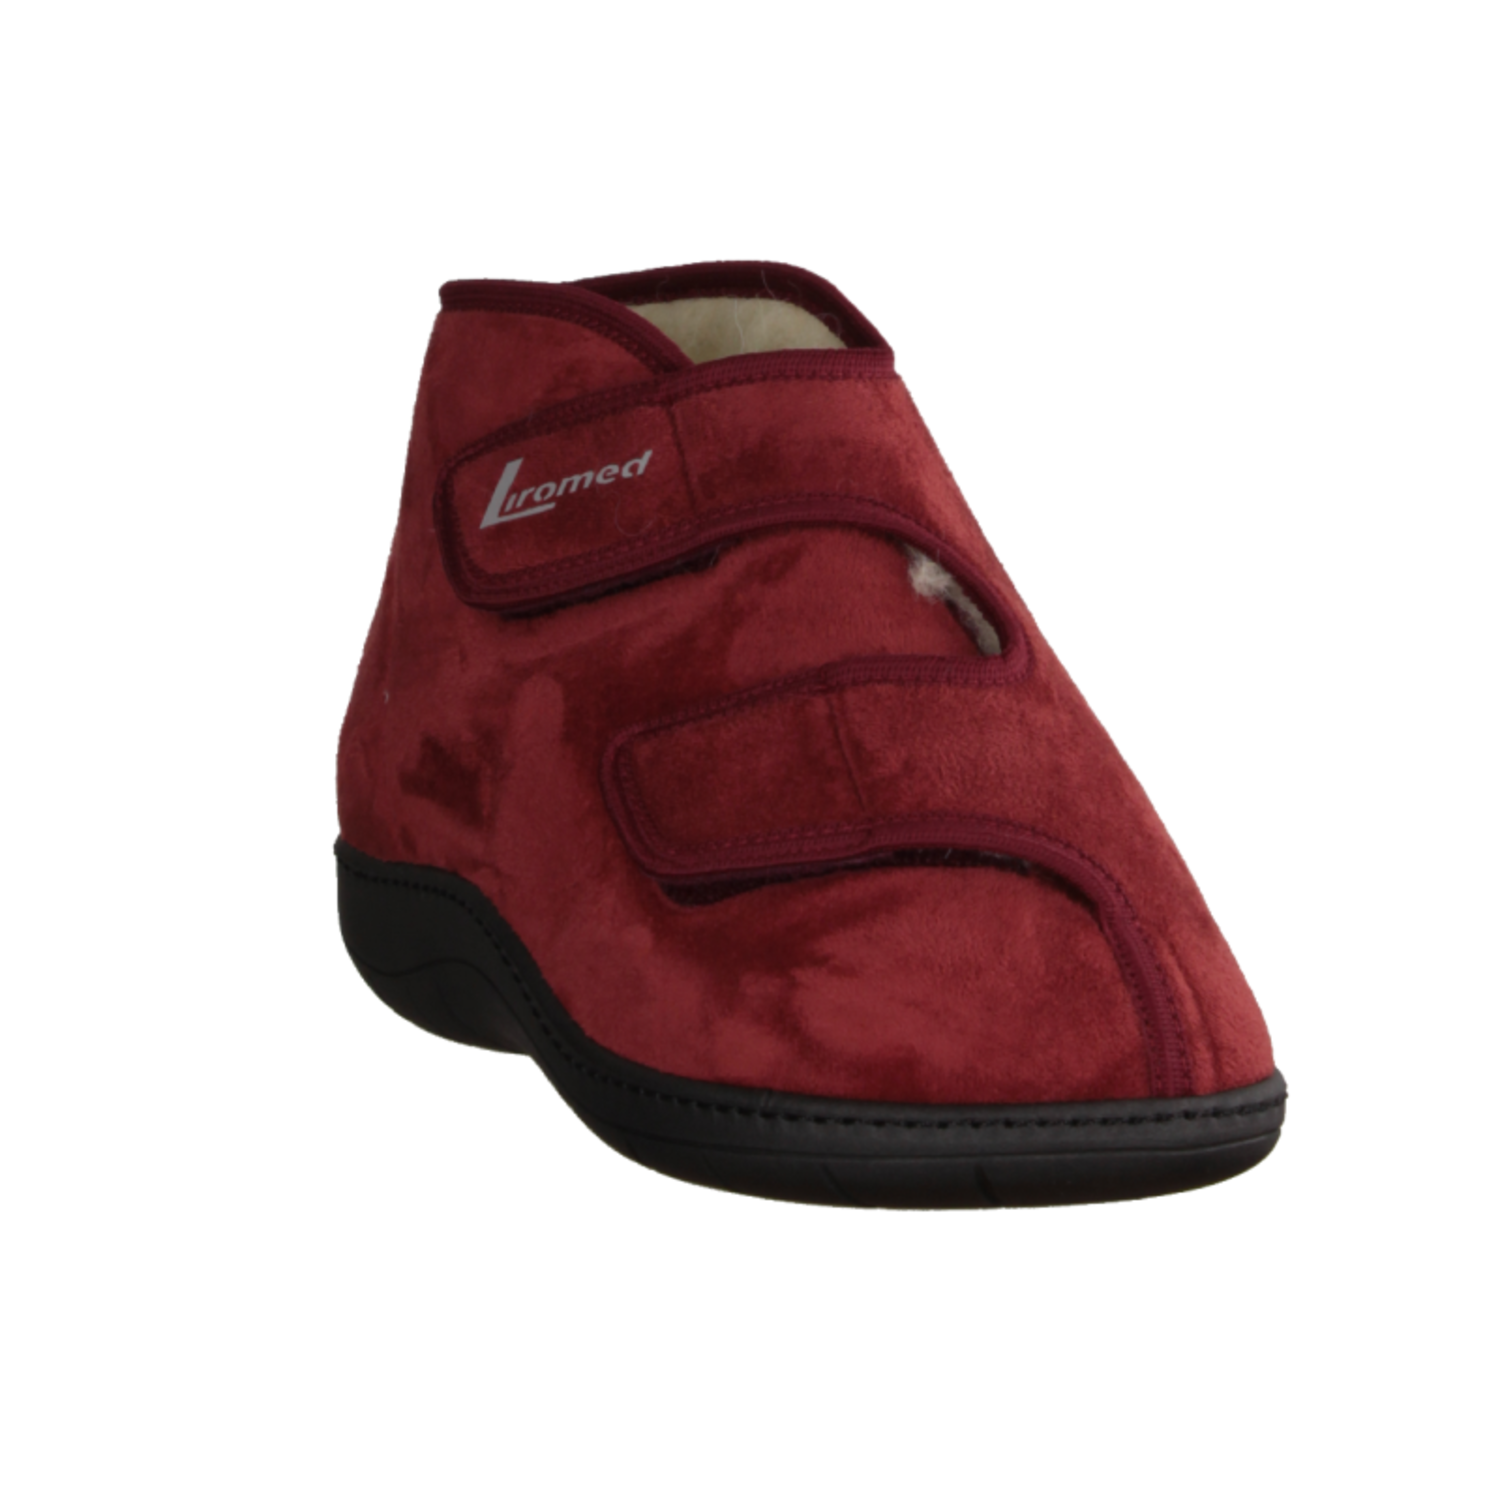 Medizinische Schuhe Liromed 477-3087 Bordo, Unisex, Textil, NEU - Herrenschuhe - Bild-2